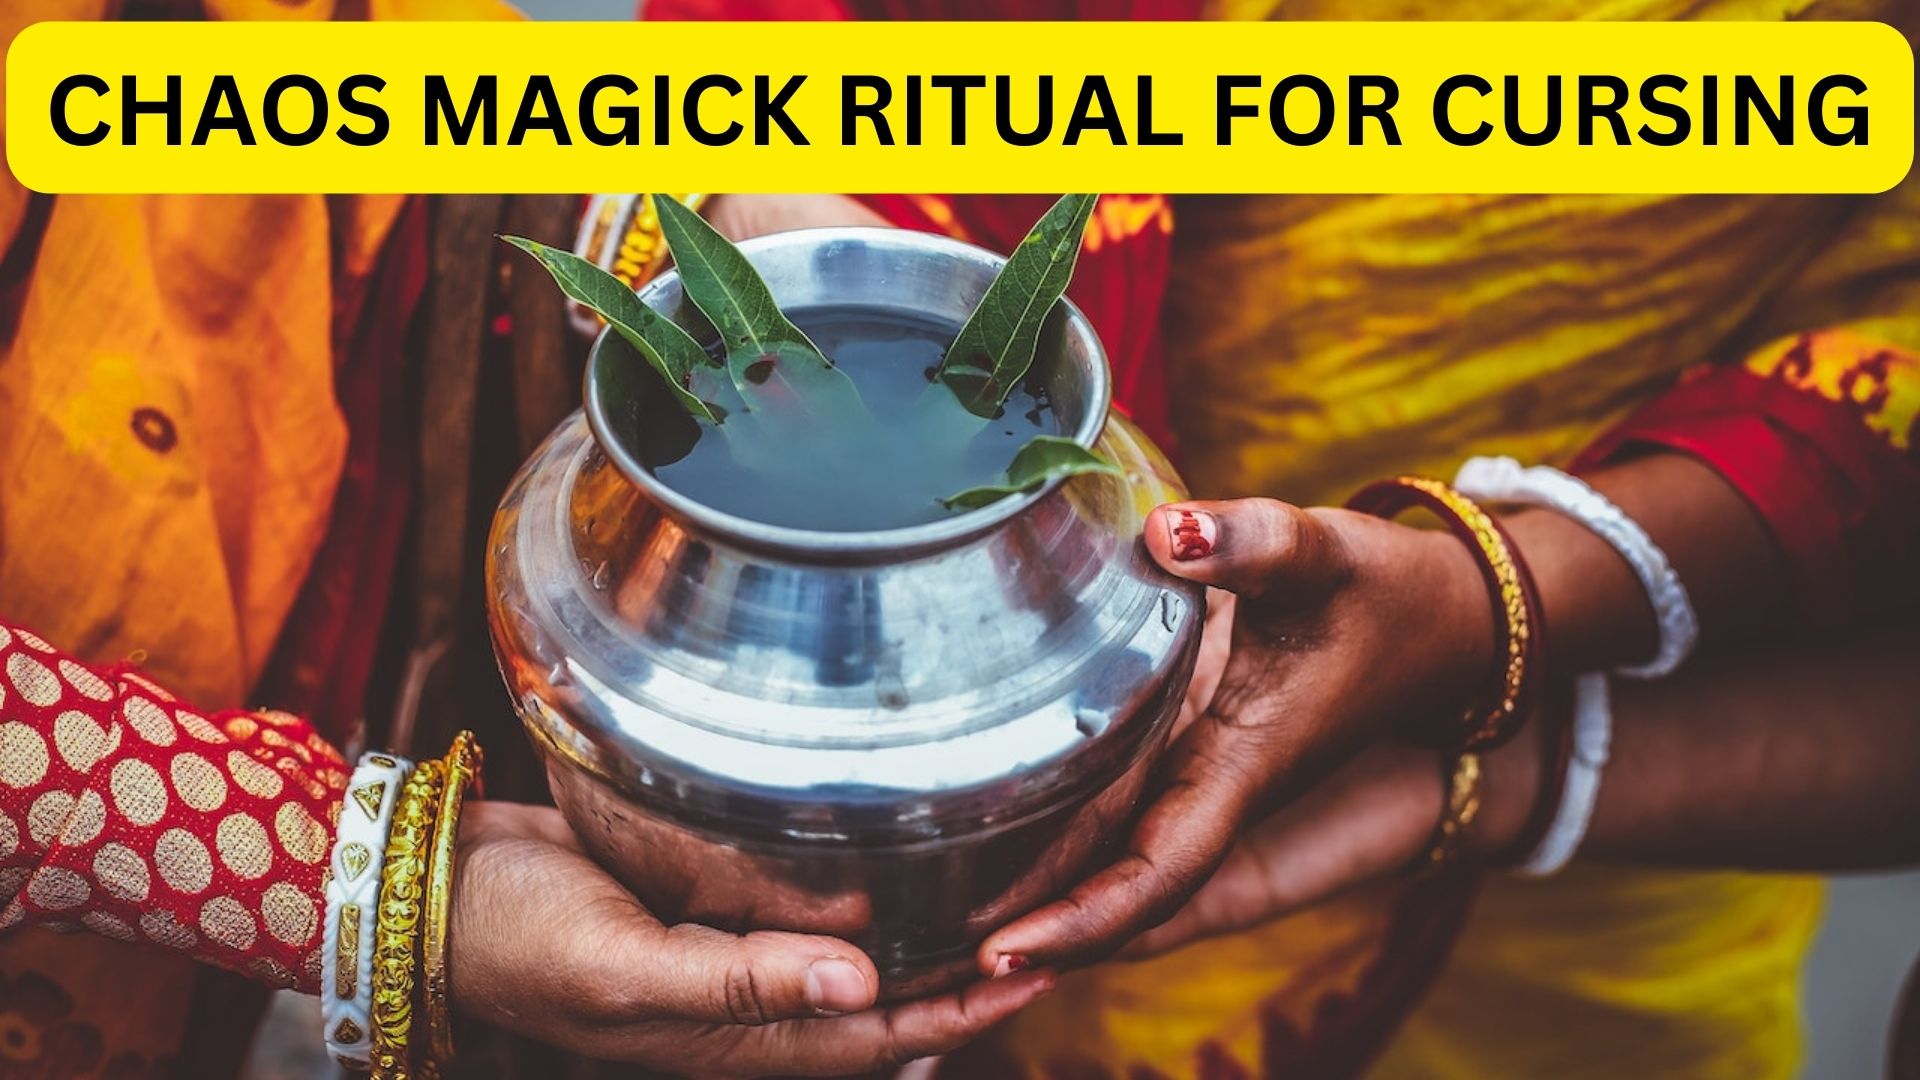 Chaos Magick Ritual For Cursing - A Contemporary Magical Practice